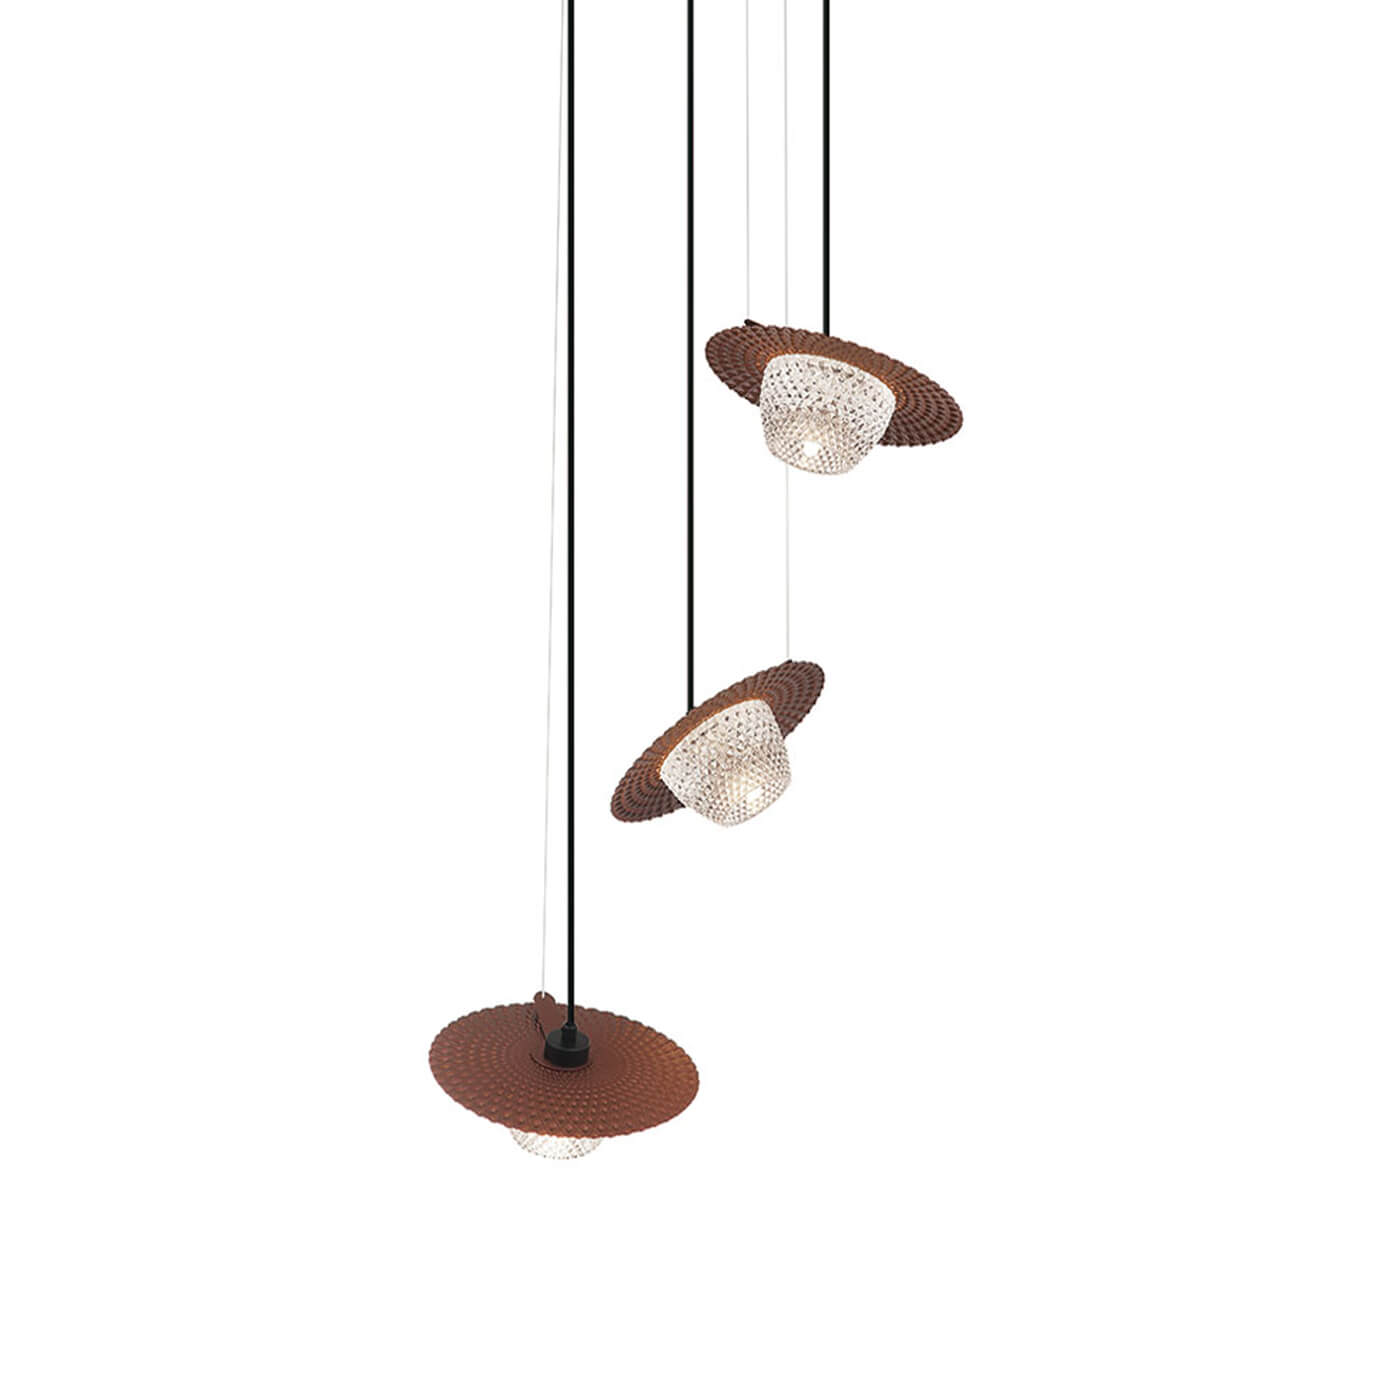 Cauti o lampa suspendata CARMEN S3 din metal si sticla, design modern, elegant, pentru living, dining sau dormitor din colectia de lustre si candelabre Domicilio?